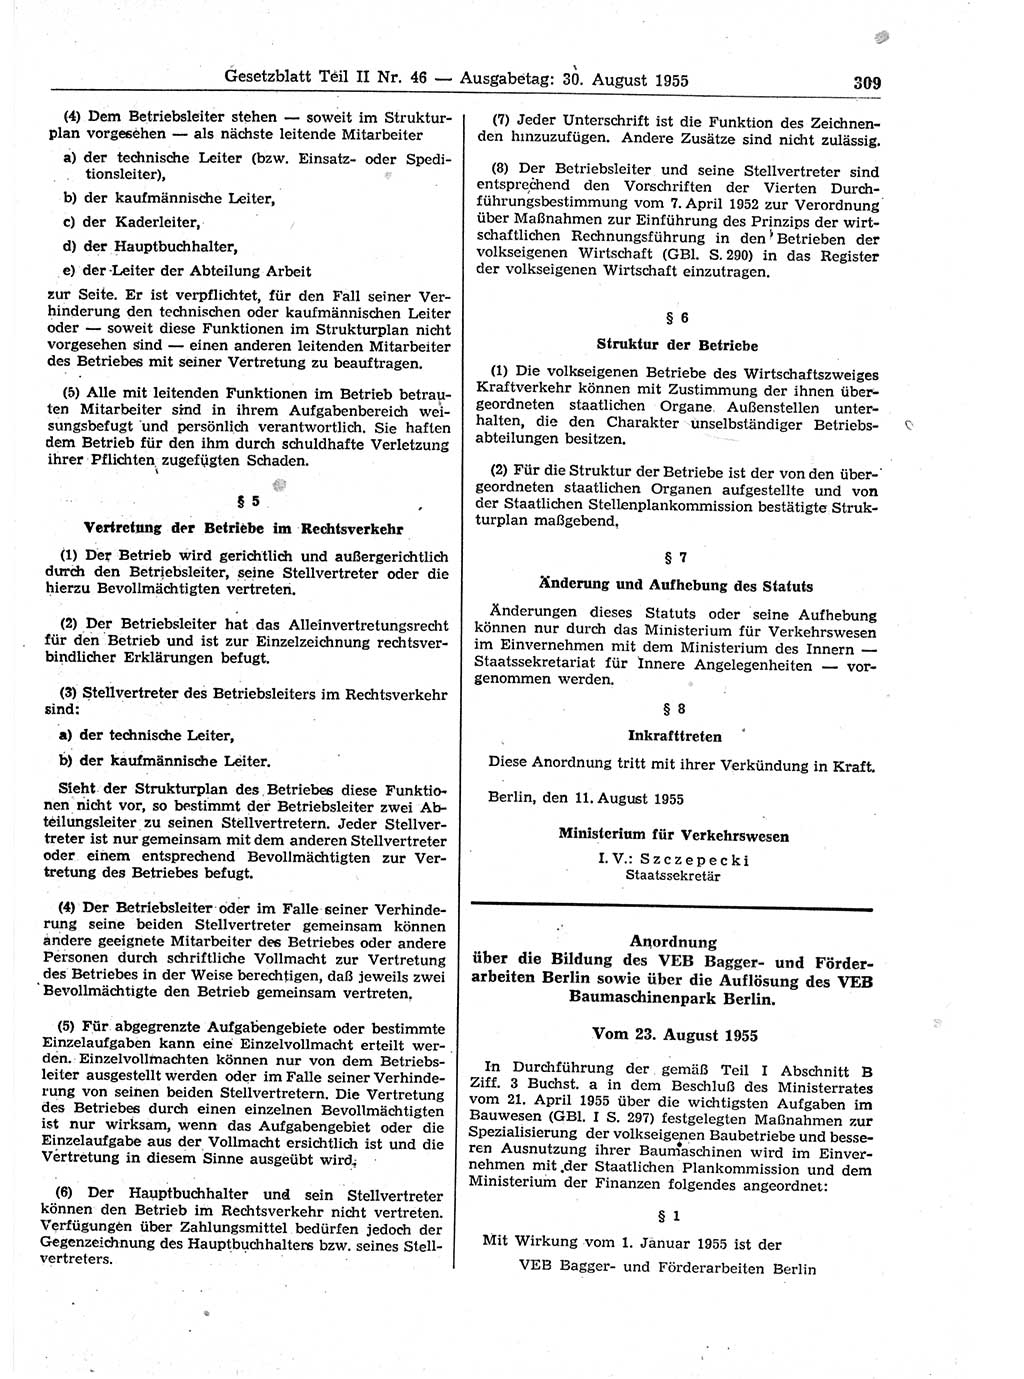 Gesetzblatt (GBl.) der Deutschen Demokratischen Republik (DDR) Teil ⅠⅠ 1955, Seite 309 (GBl. DDR ⅠⅠ 1955, S. 309)